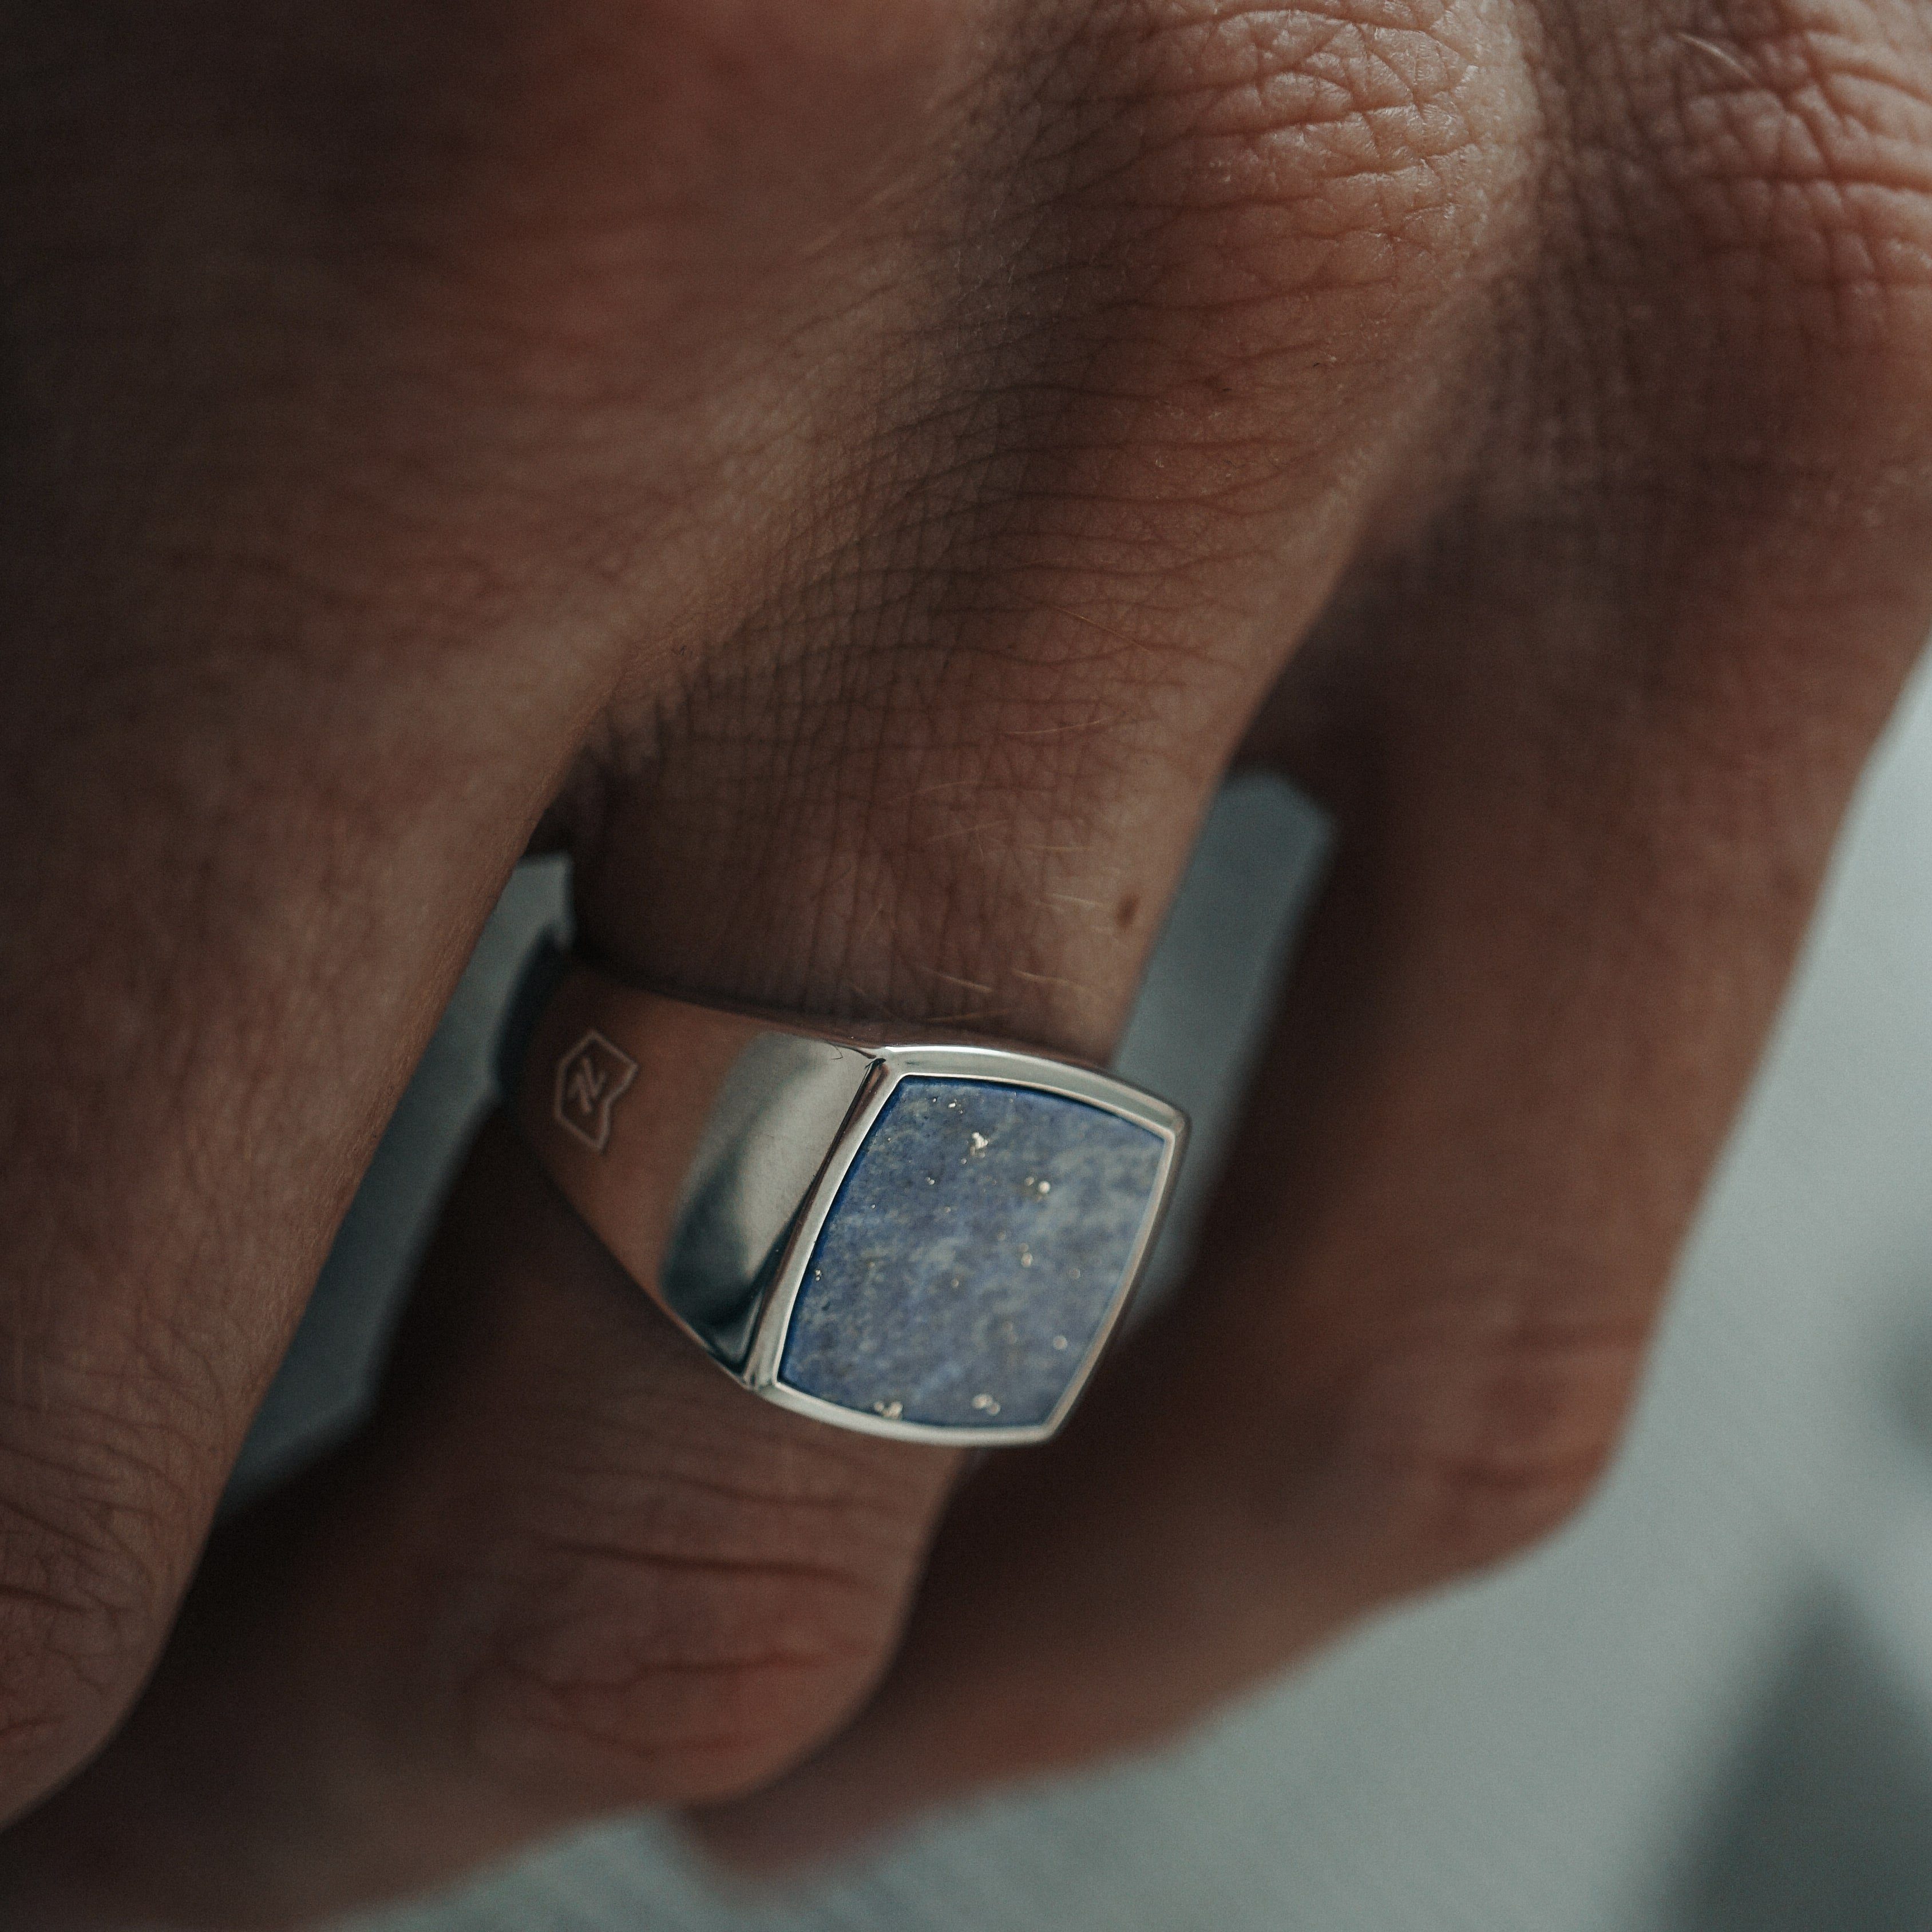 Herren Schmuck Sprezzi Fashion Siegelring Herren Ring Silber aus 925 Sterling Silber Siegelring massiv poliert mit blauem Lapis 